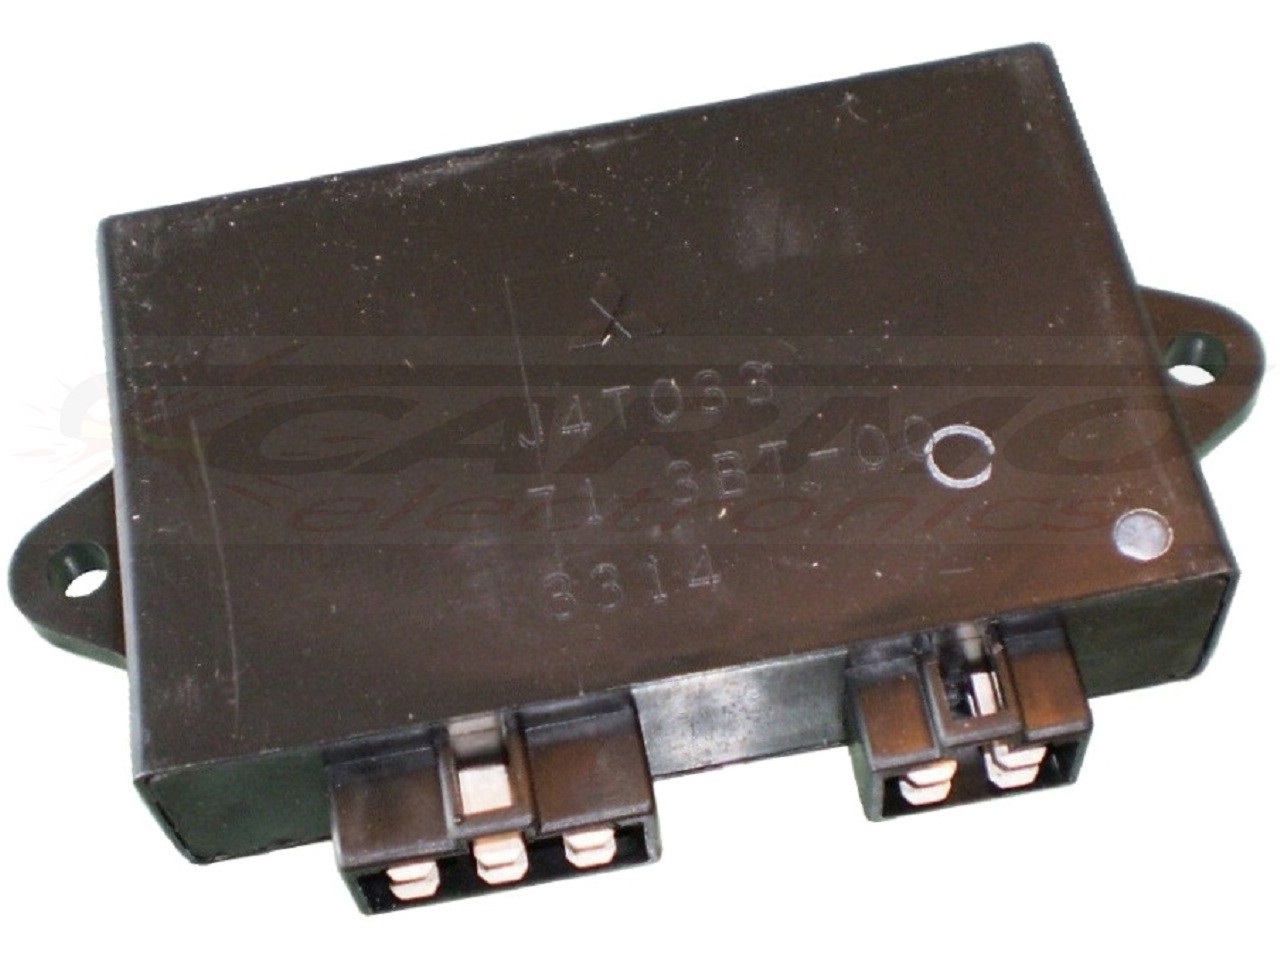 XV400 Virago TCI CDI dispositif de commande boîte noire (J4T033, J4T020)